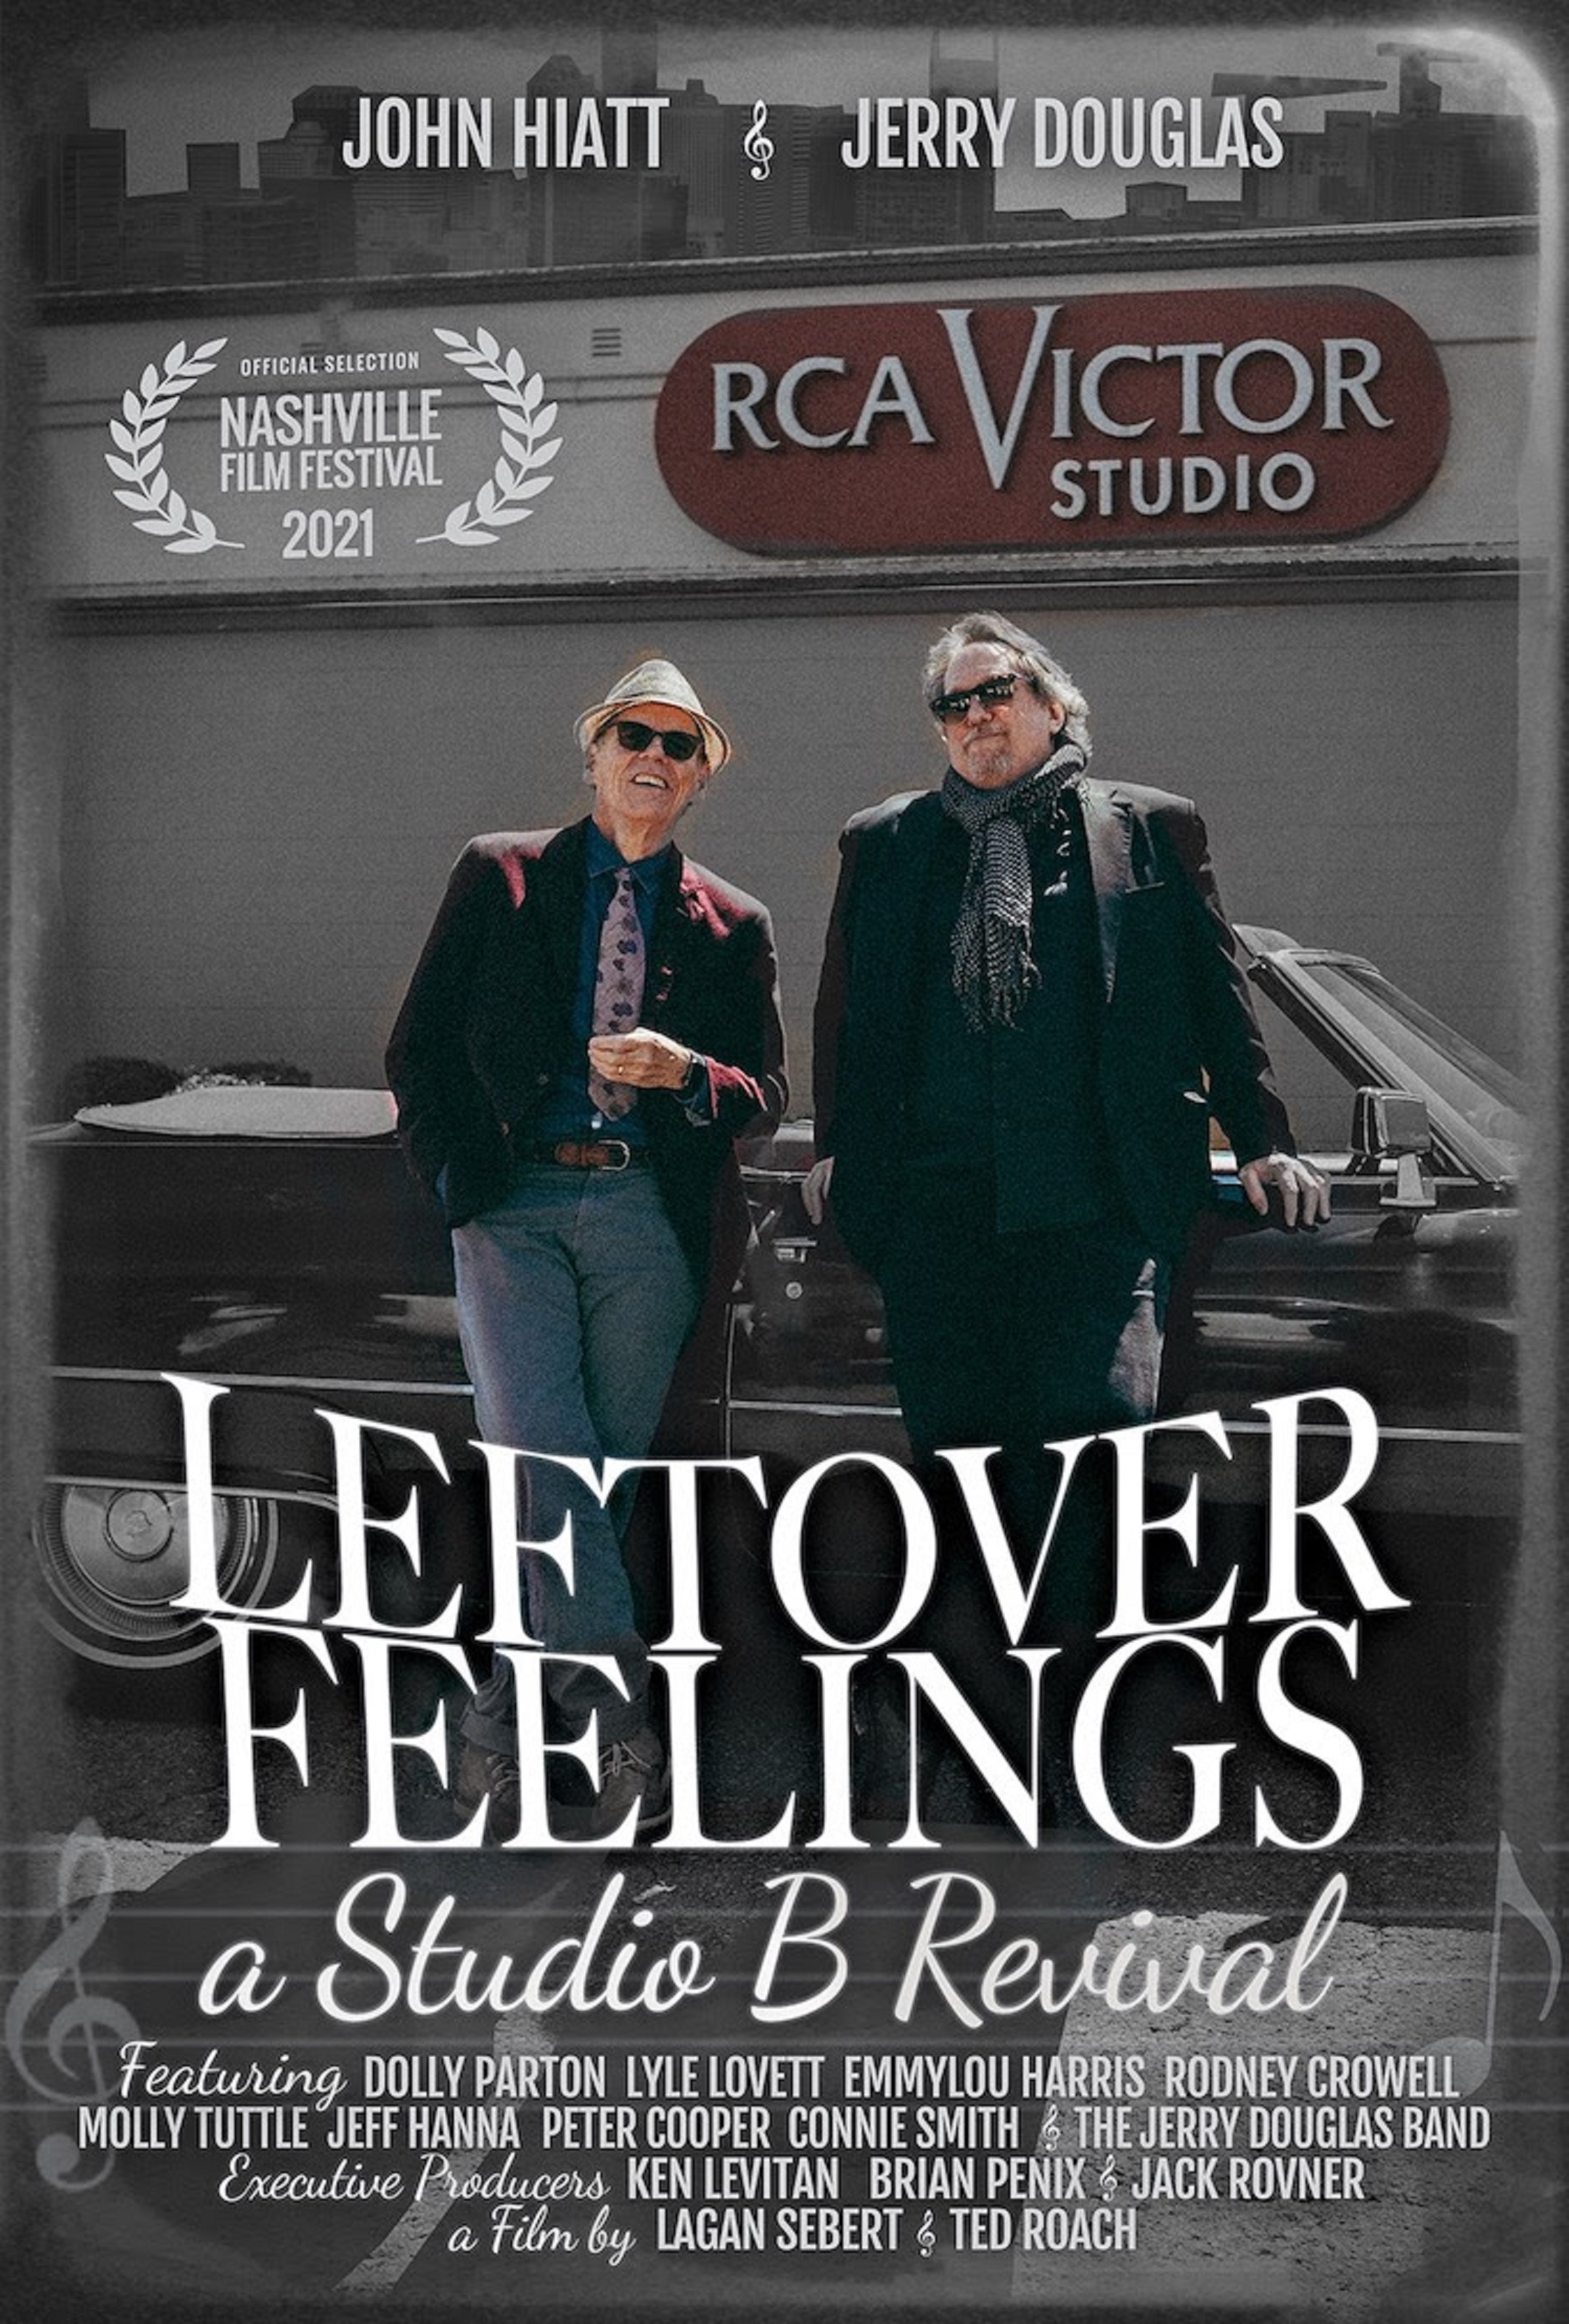 John Hiatt & Jerry Douglas Release Documentary Trailer for "Leftover Feelings: A Studio B Revival"